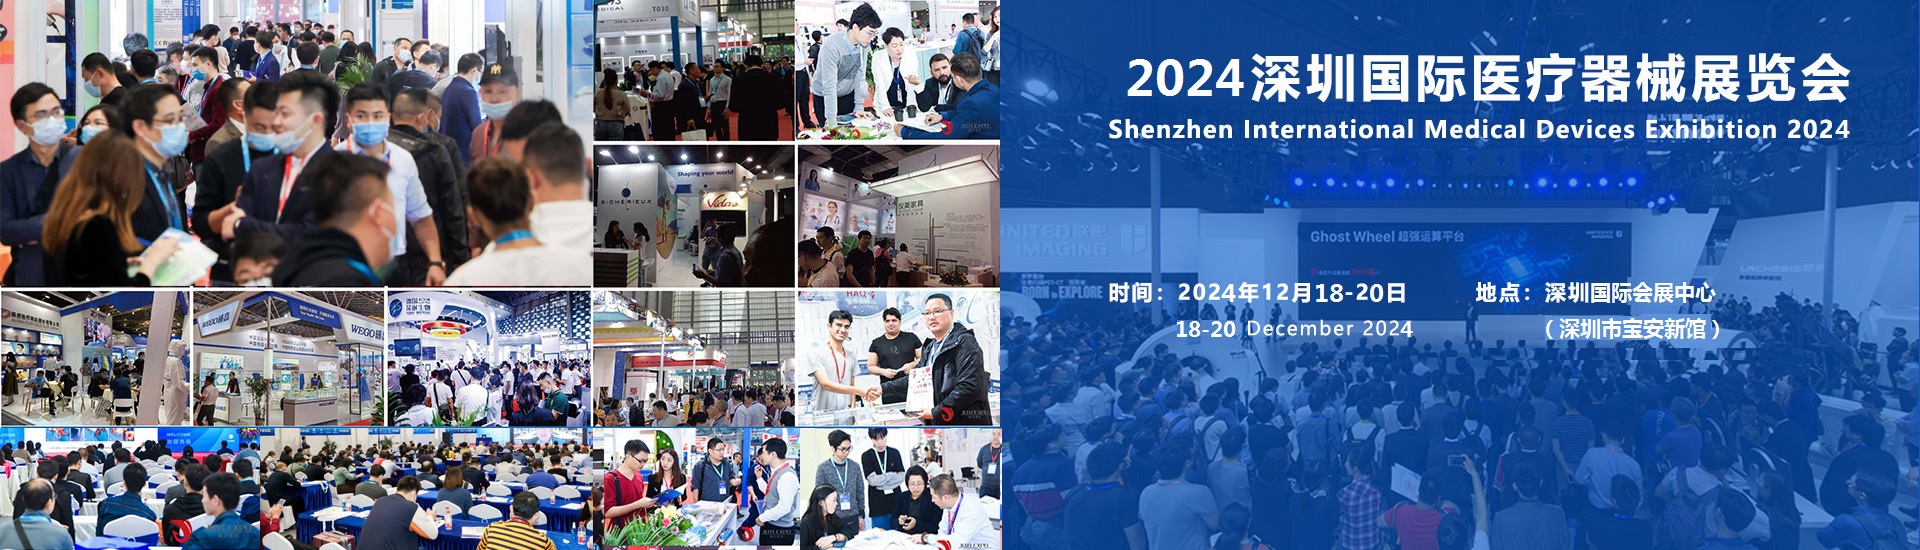 2024深圳国际医疗器械展览会：各地区展商申请分配展位并确认展区